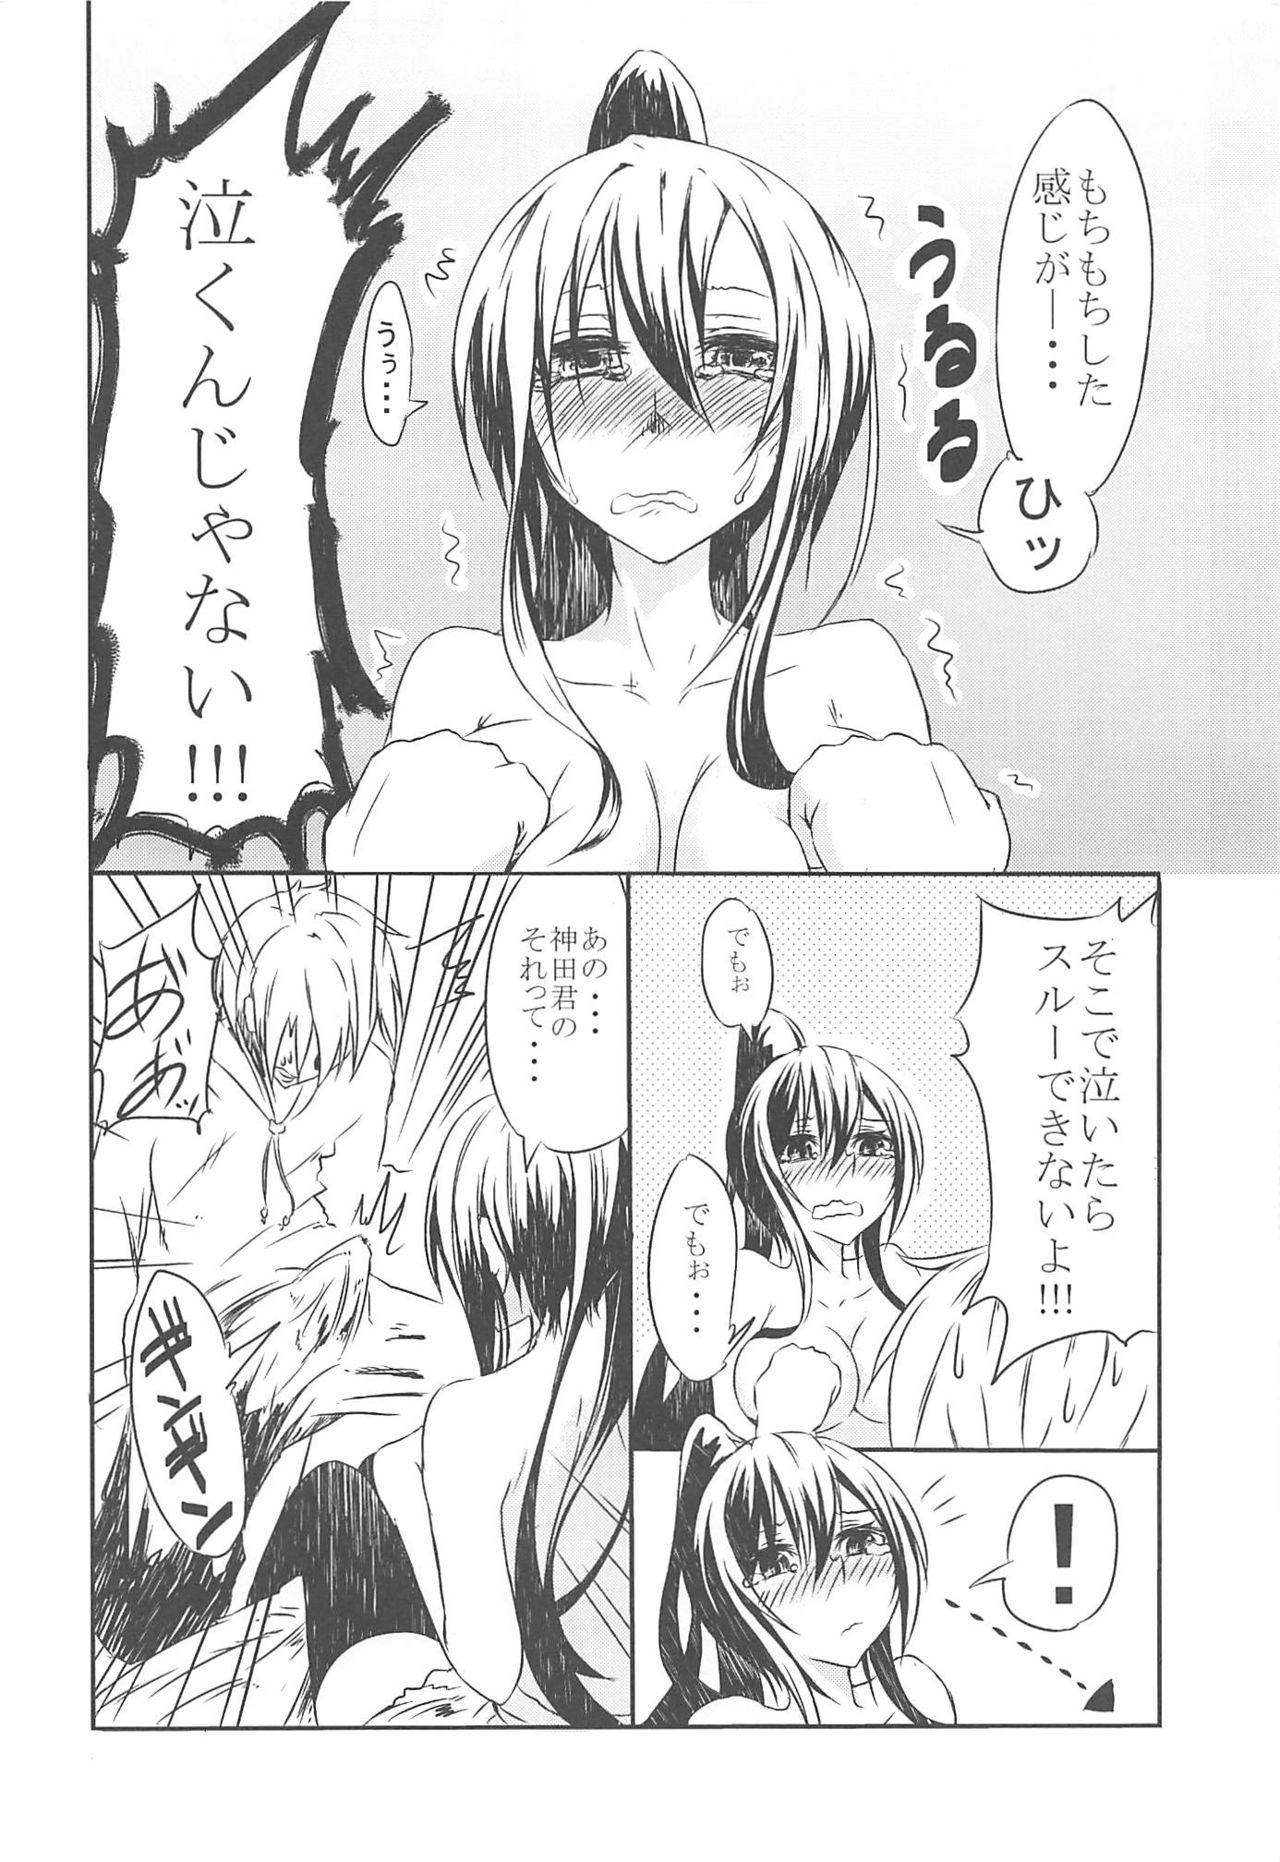 Screaming Sakurasou no Ecchi na Kanojo - Sakurasou no pet na kanojo Perra - Page 5